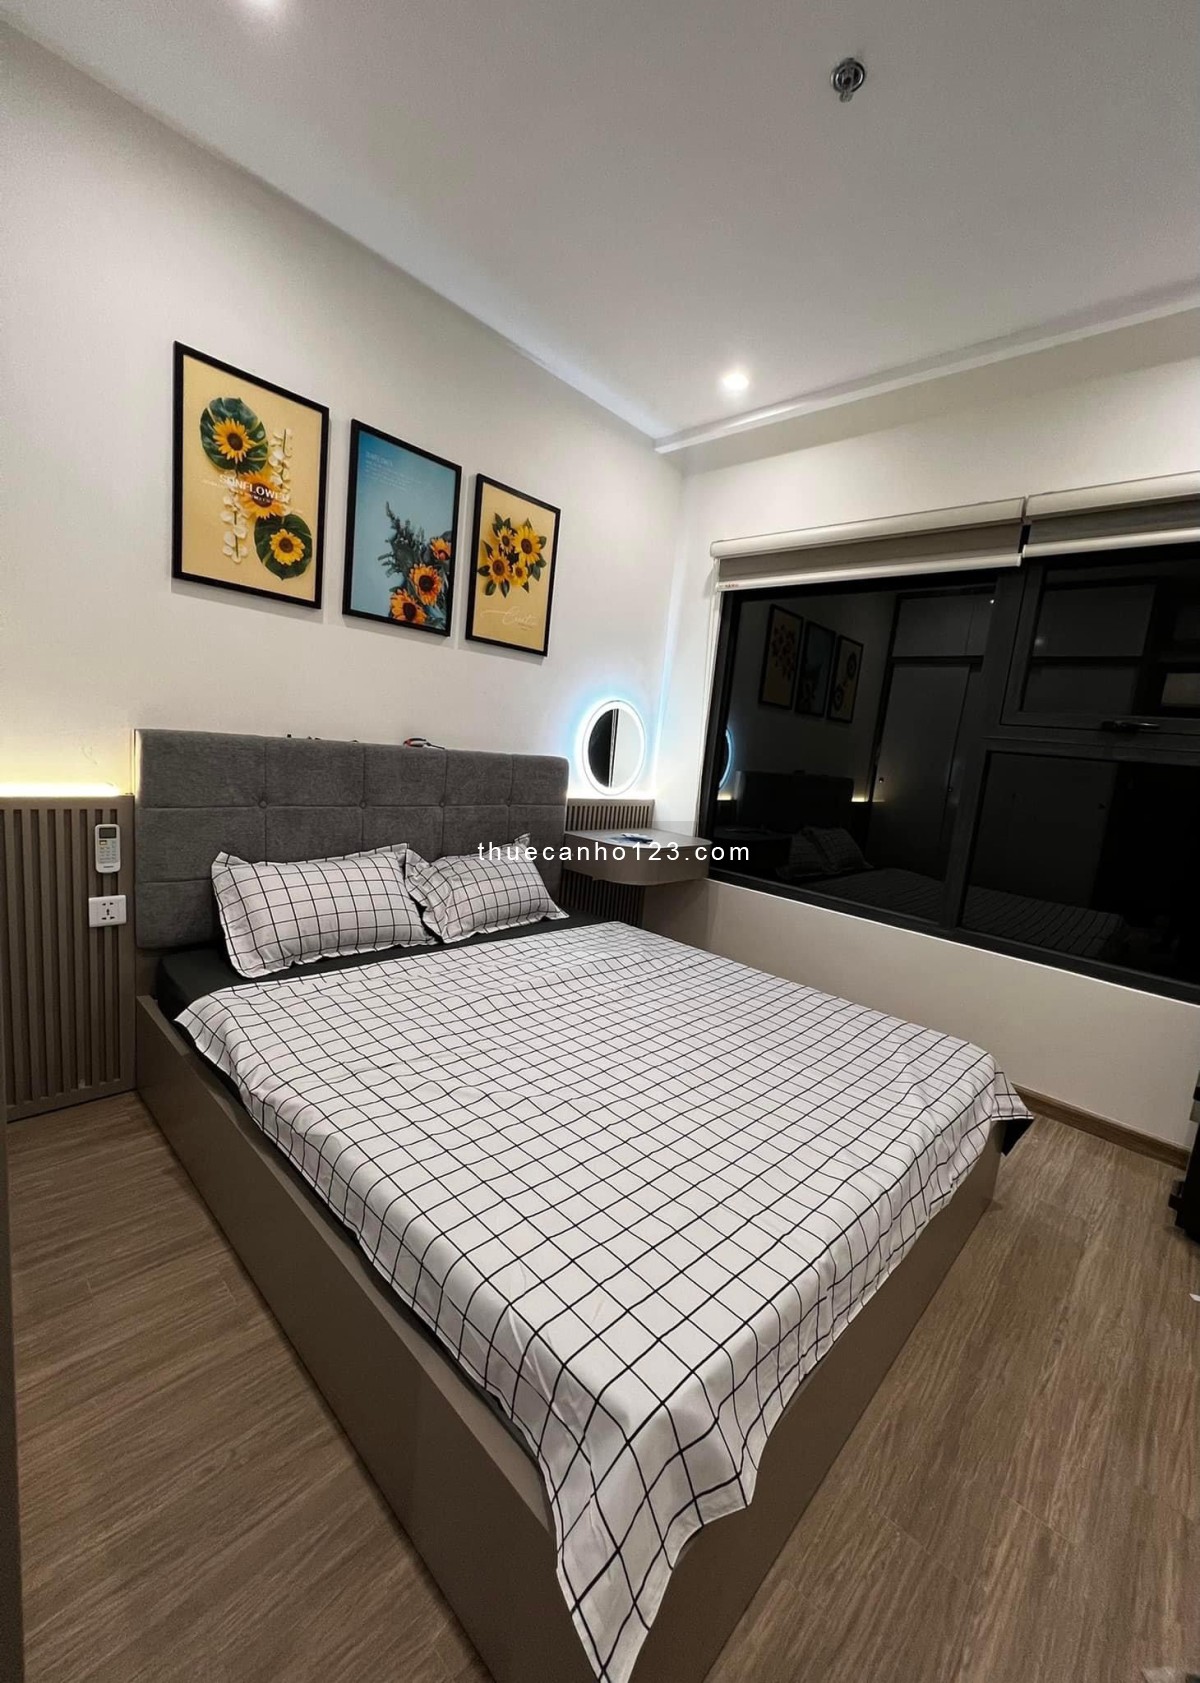 Cho thuê hơn 500 căn hộ Vinhomes Smart City, 1-3 PN, Cơ bản đến Full đồ, Giá từ 5,5tr/th